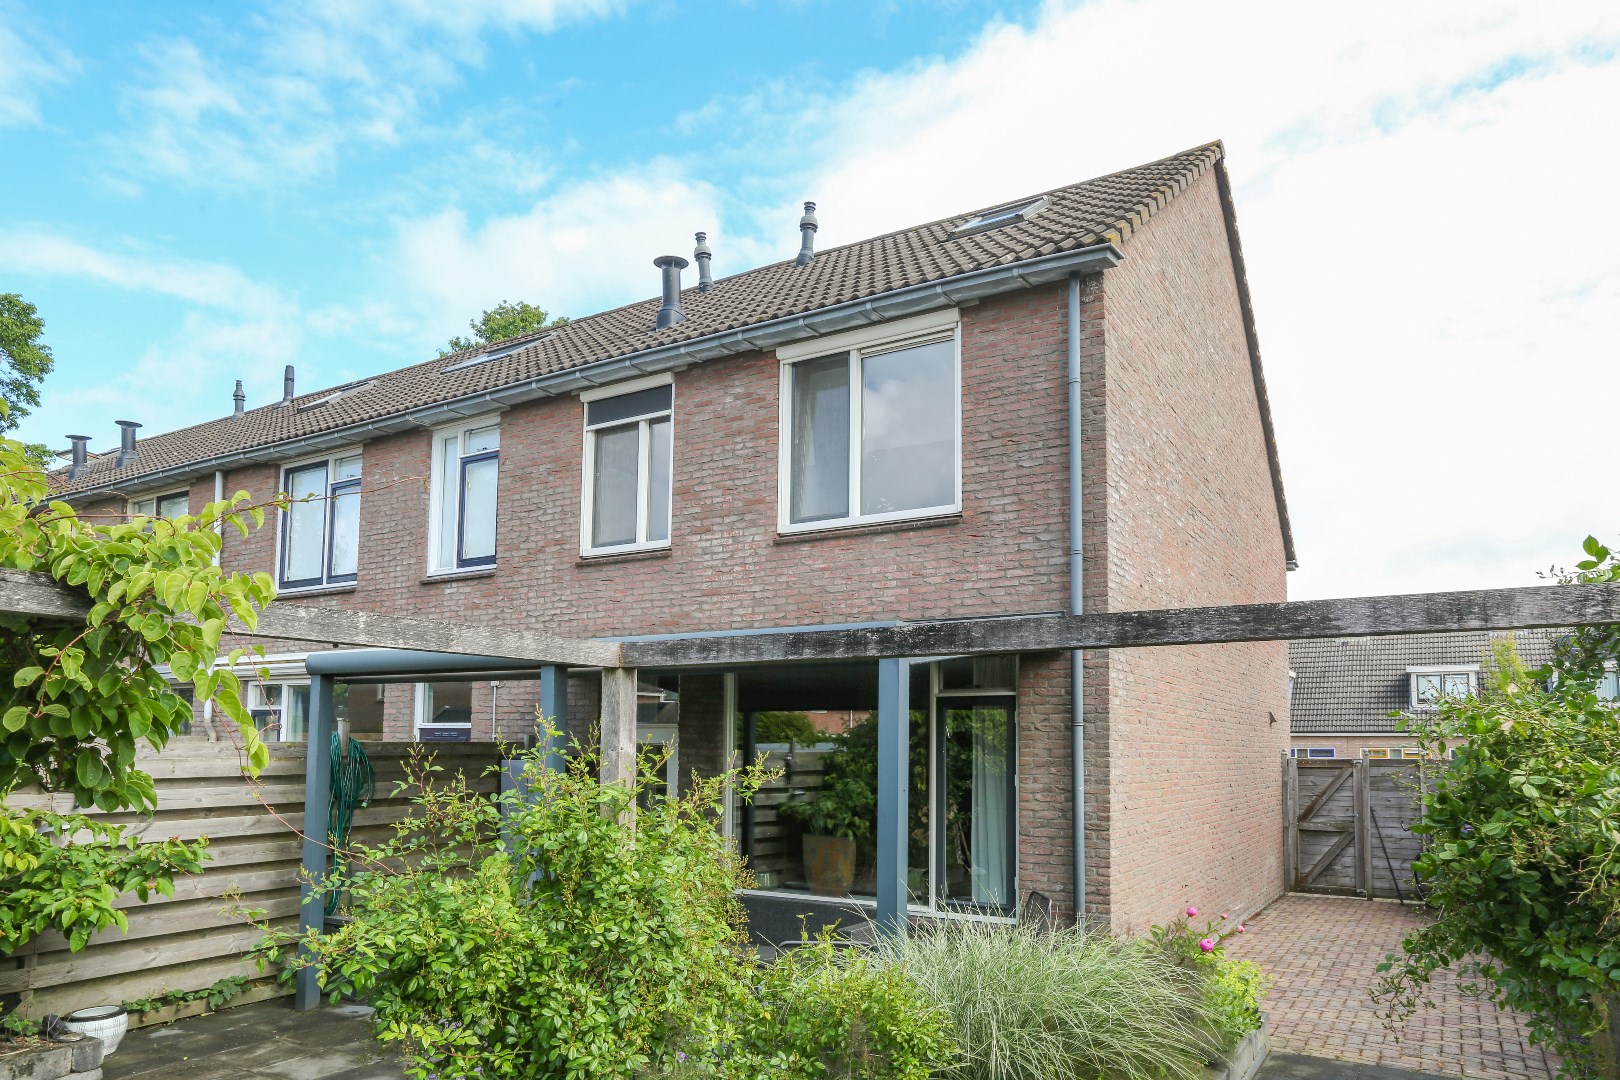 Te huur: Woning De Houtduif, Surhuisterveen - 5